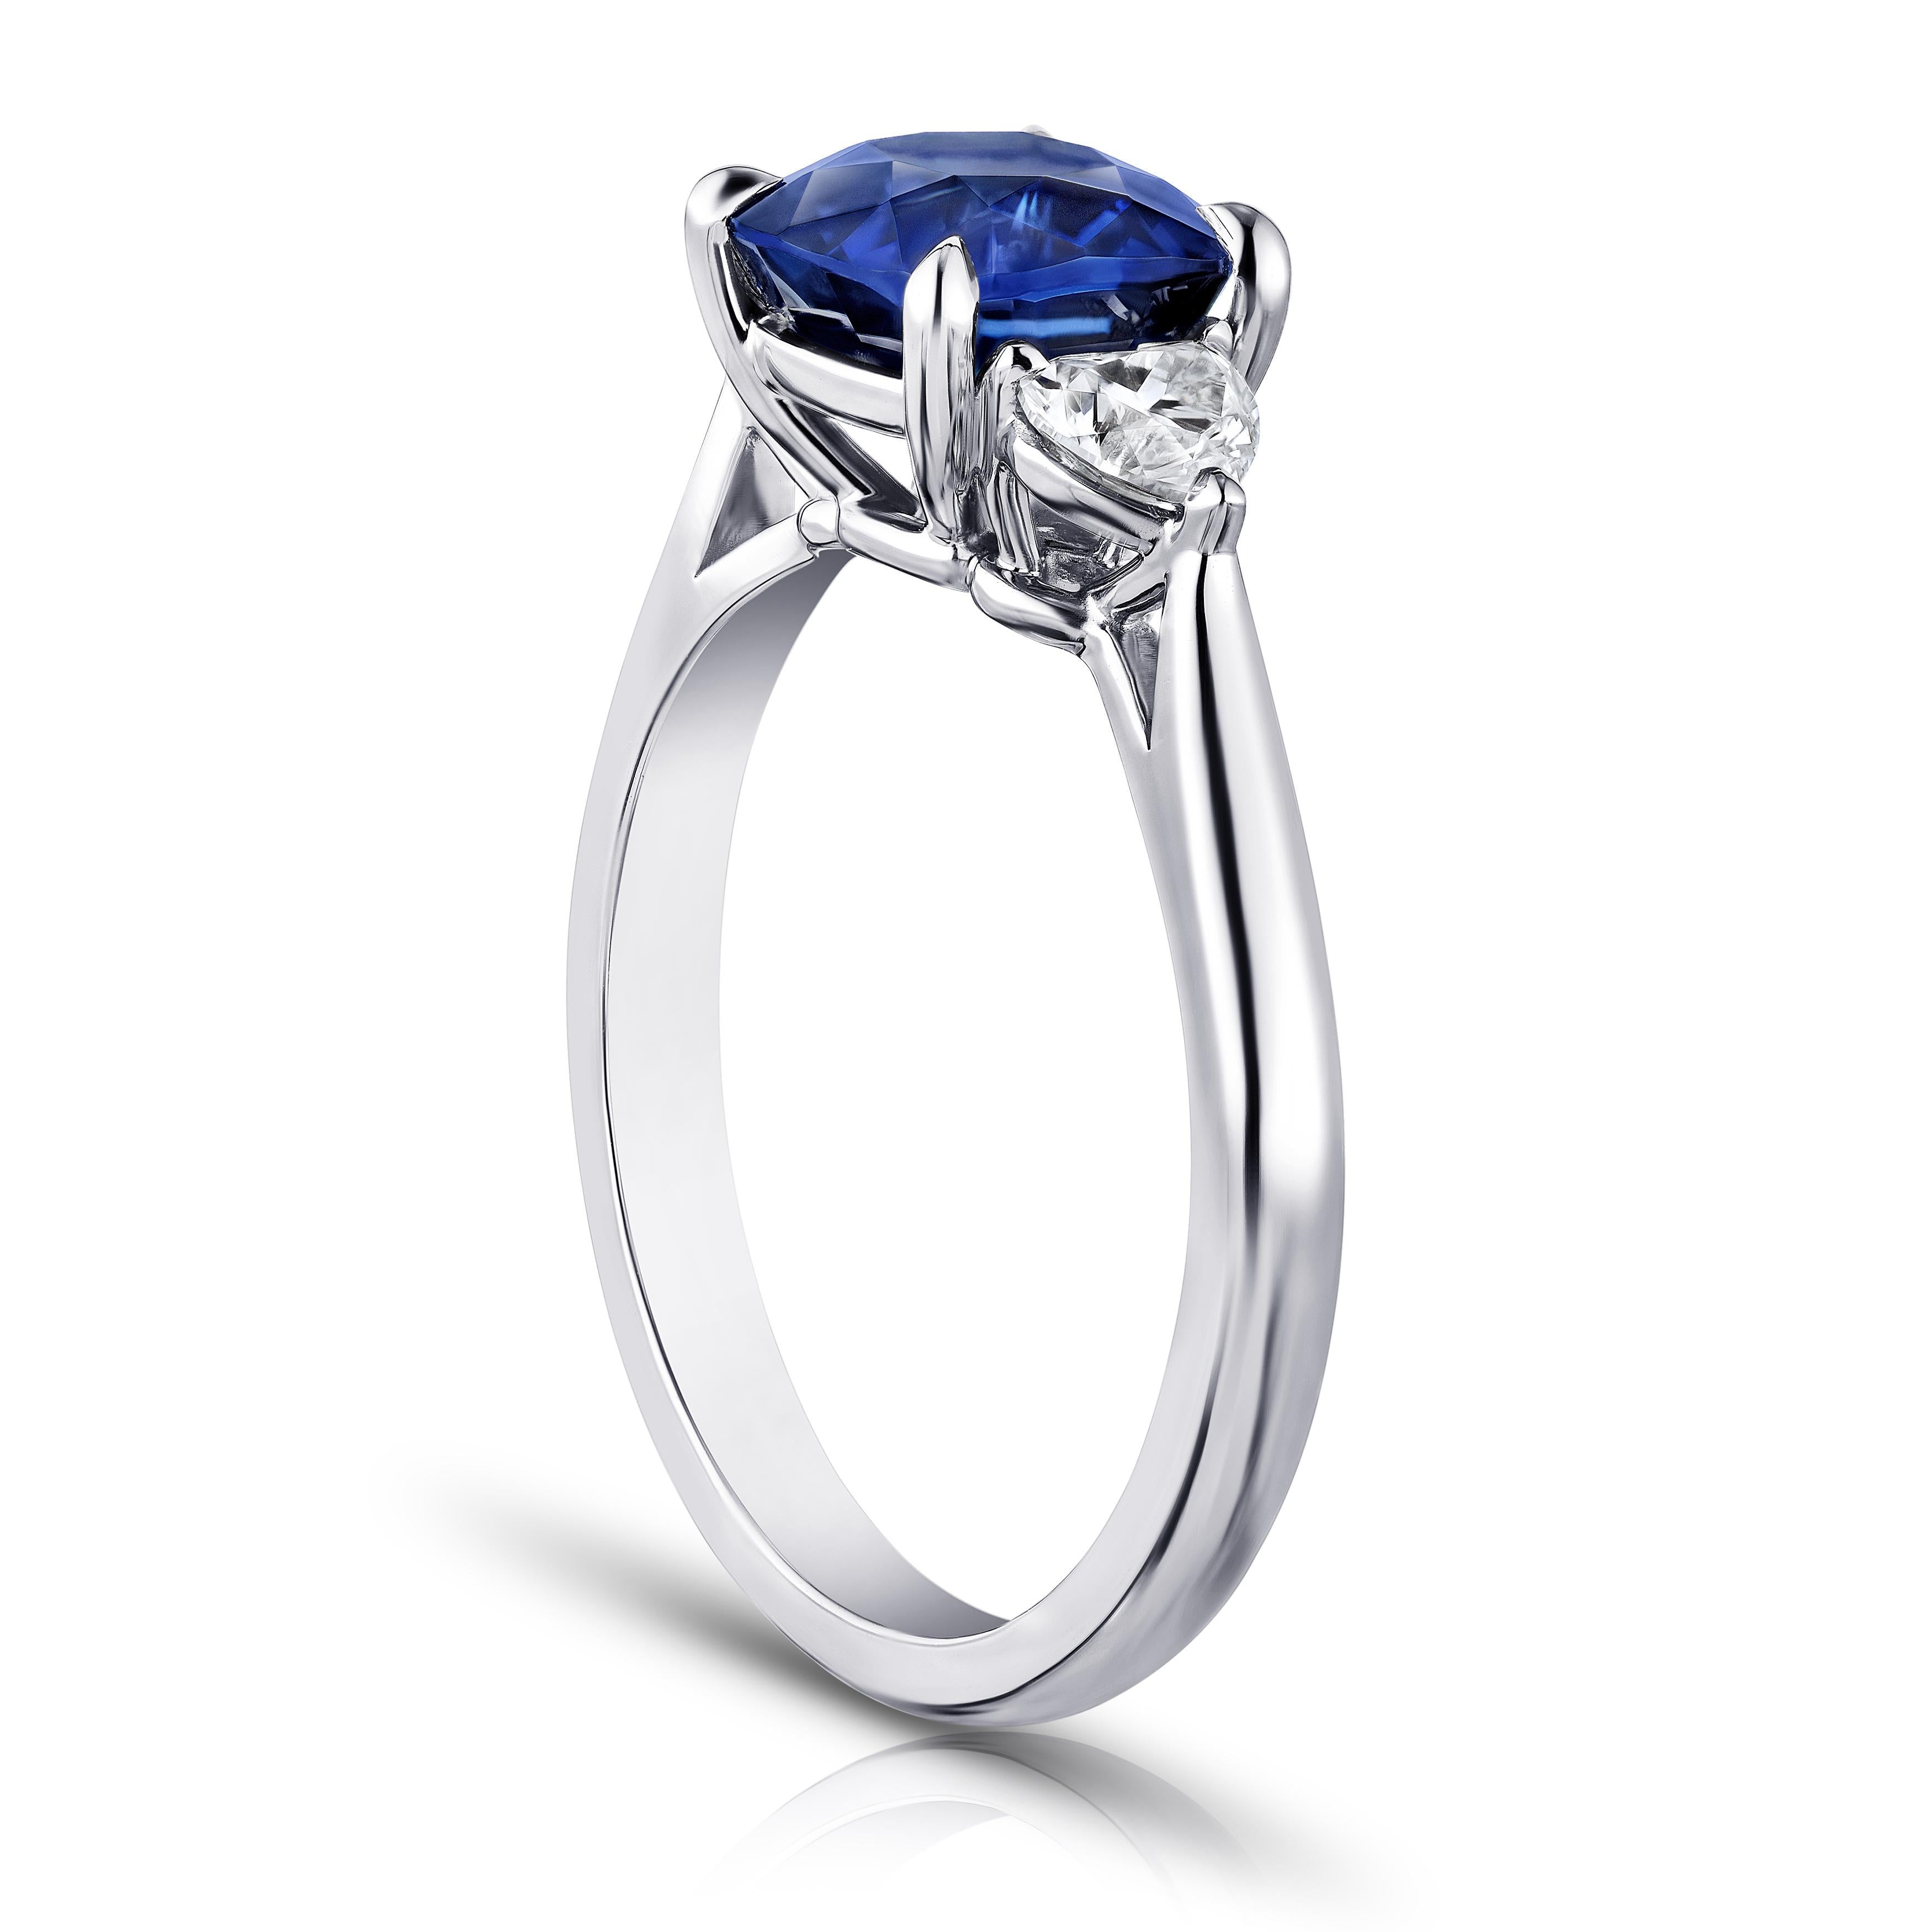 2,61 Karat kissenförmiger blauer Saphir mit herzförmigen Diamanten von 0,49 Karat, eingefasst in einen Platinring. Ring ist derzeit eine Größe 7. Wir bieten kostenlose Größenanpassung an Ihre Fingergröße. 
